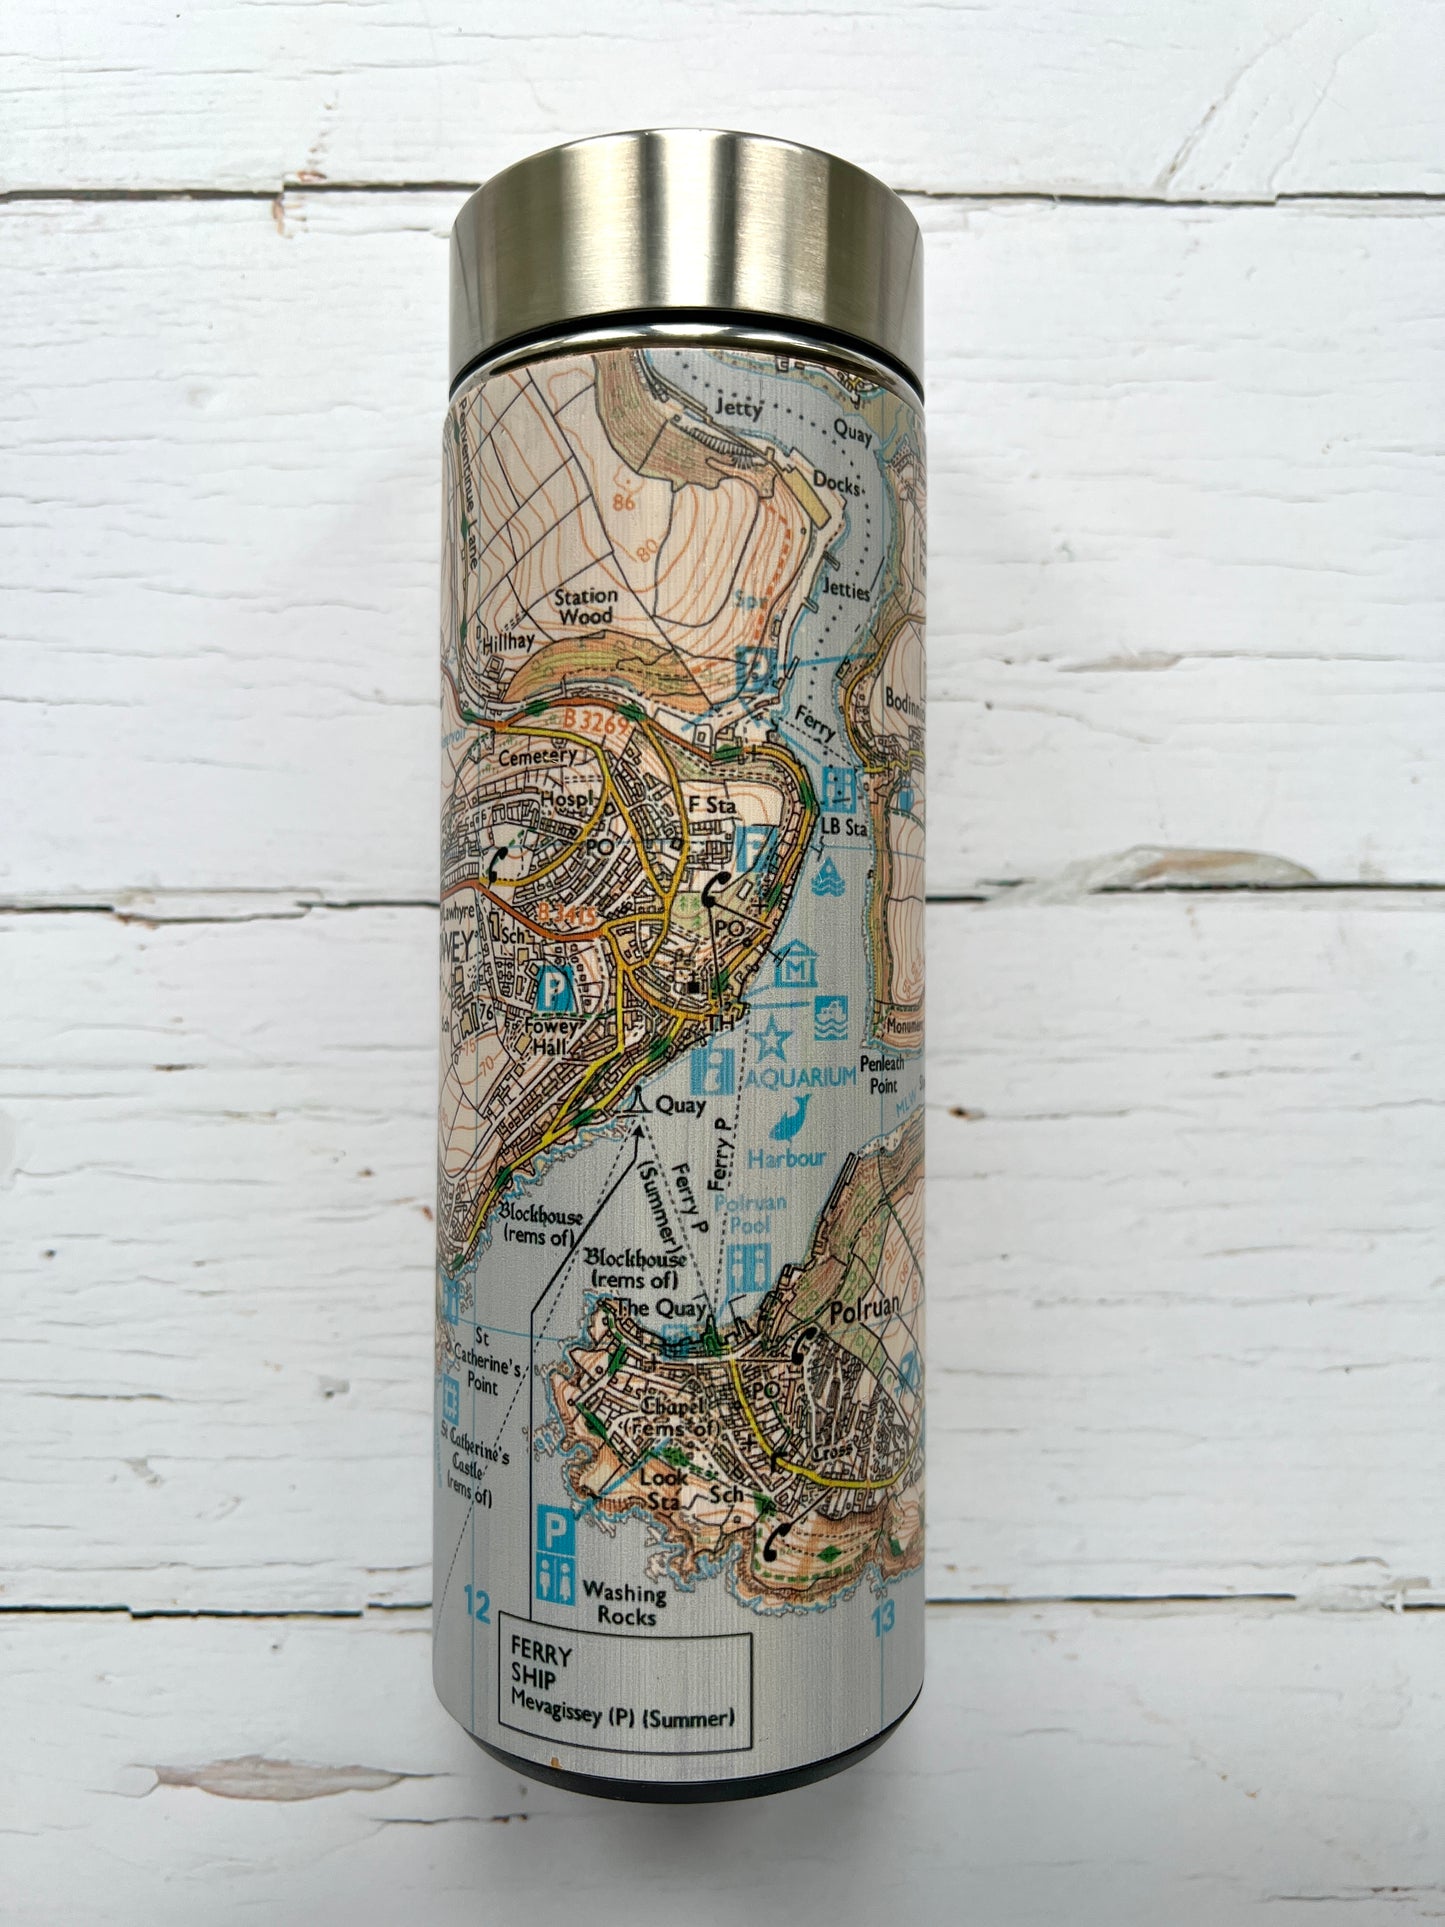 Fowey Map Wooden Stainless Steel Water Bottle Flask